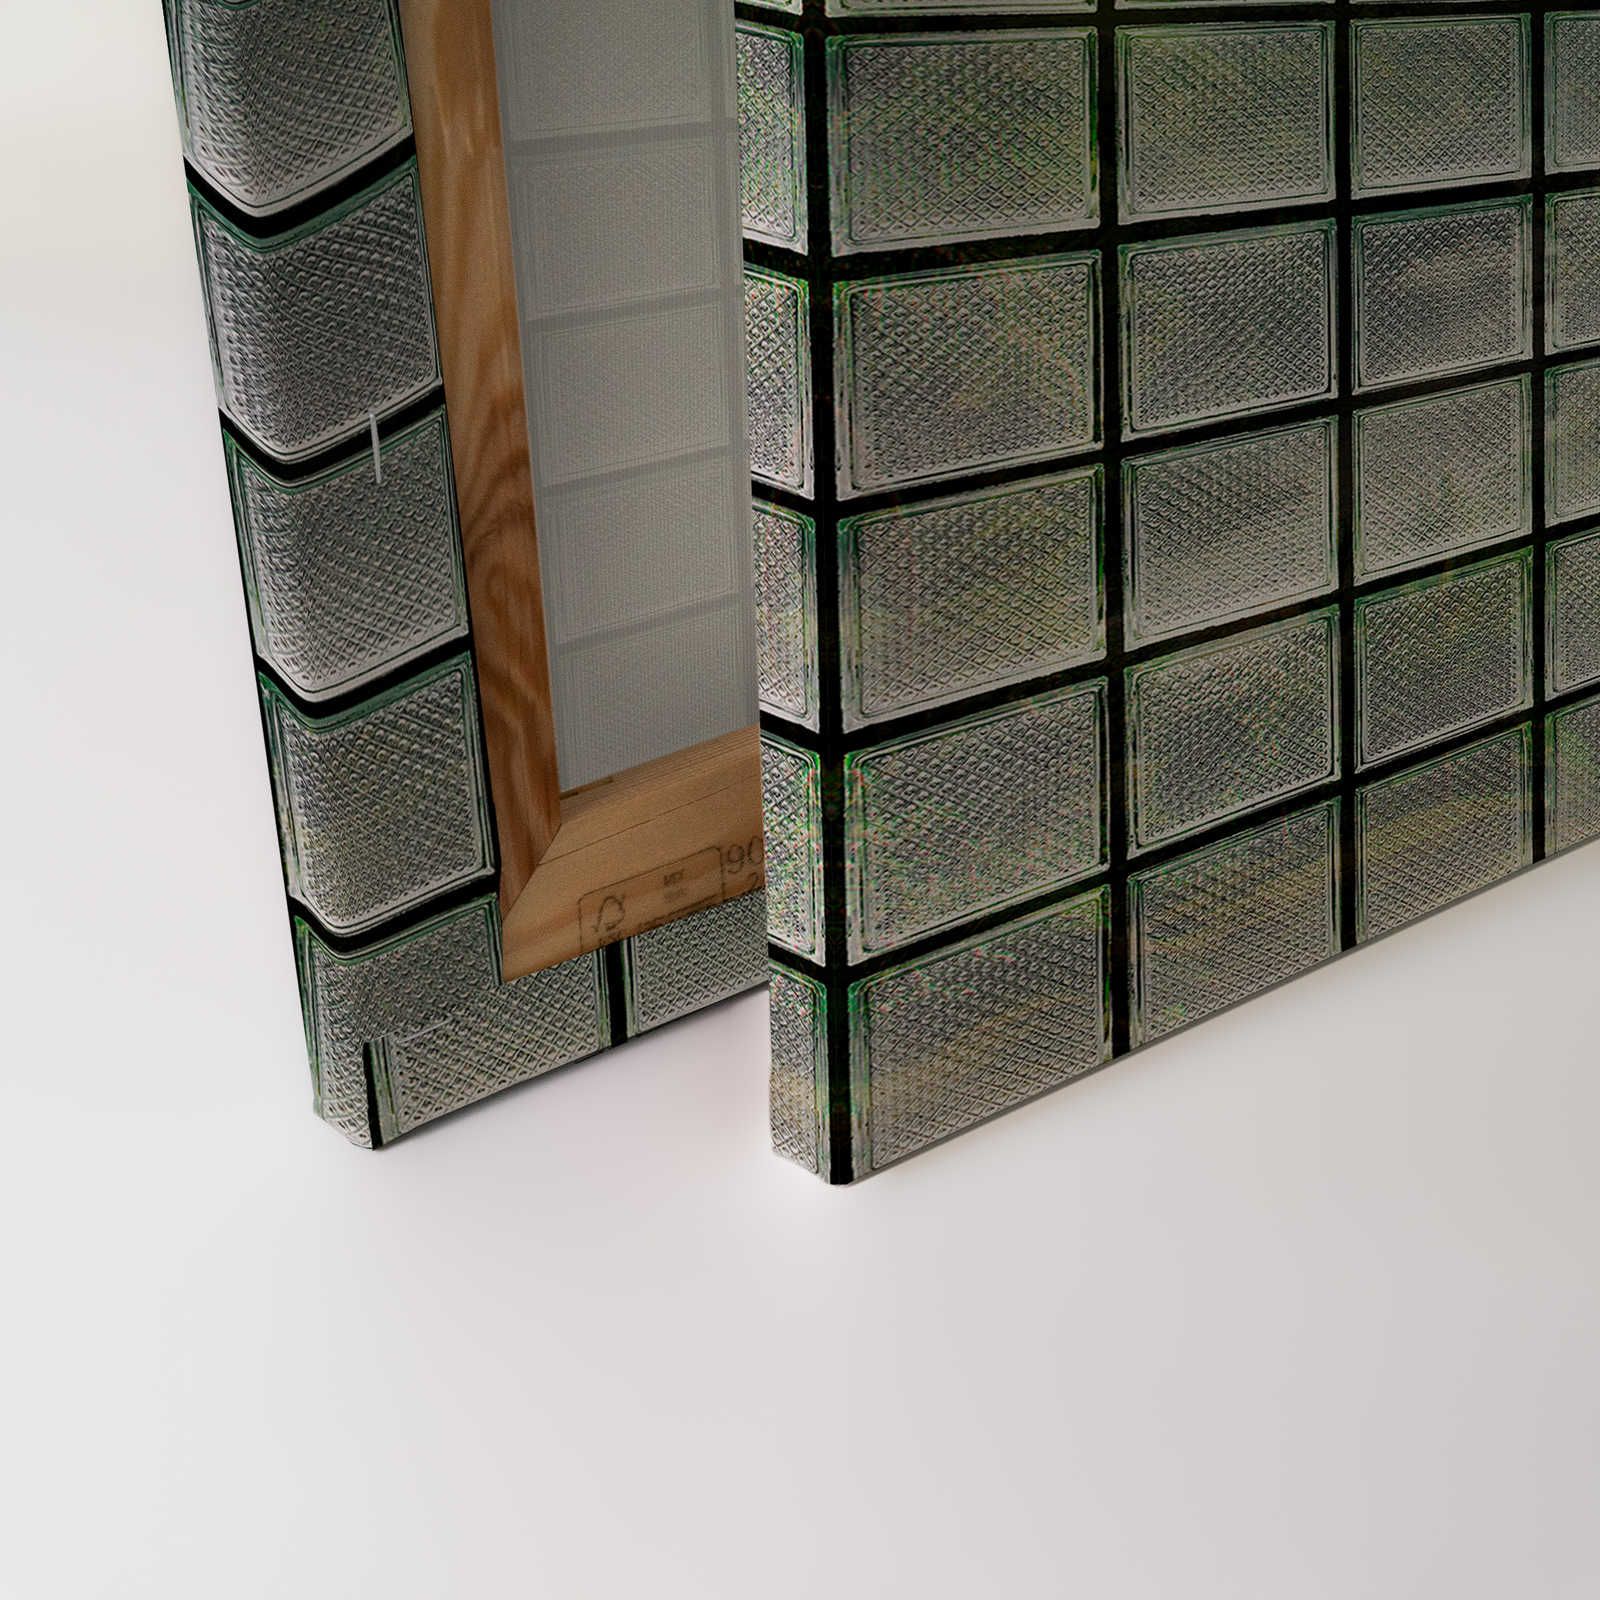             Green House 3 - Toile fenêtre briques de verre & forêt tropicale - 0,90 m x 0,60 m
        